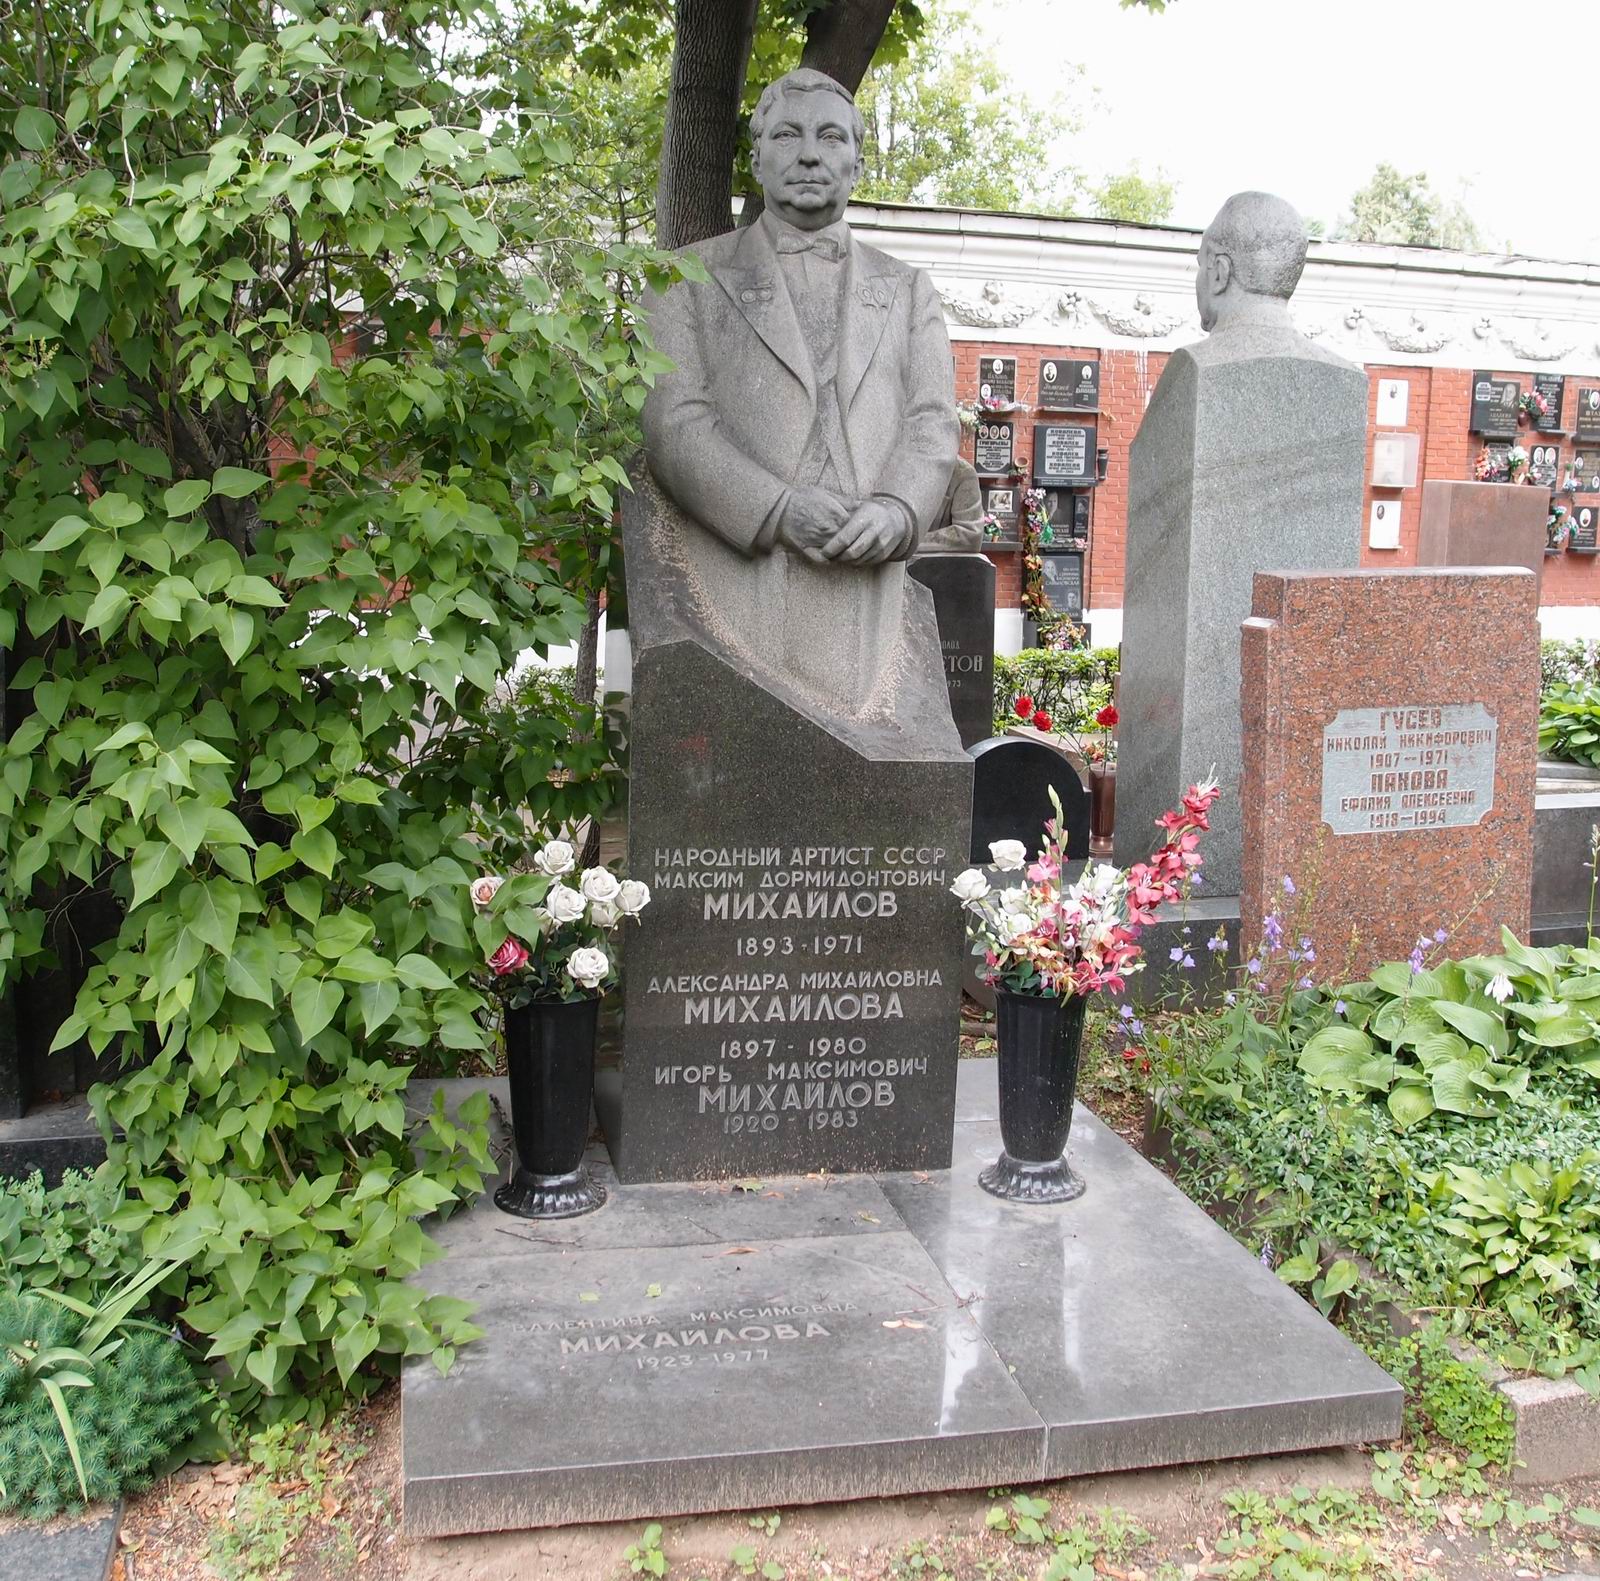 Памятник на могиле Михайлова М.Д. (1893-1971), ск. А.Елецкий, арх. А.Усачёв, на Новодевичьем кладбище (7-19-9). Нажмите левую кнопку мыши, чтобы увидеть часть памятника крупно.